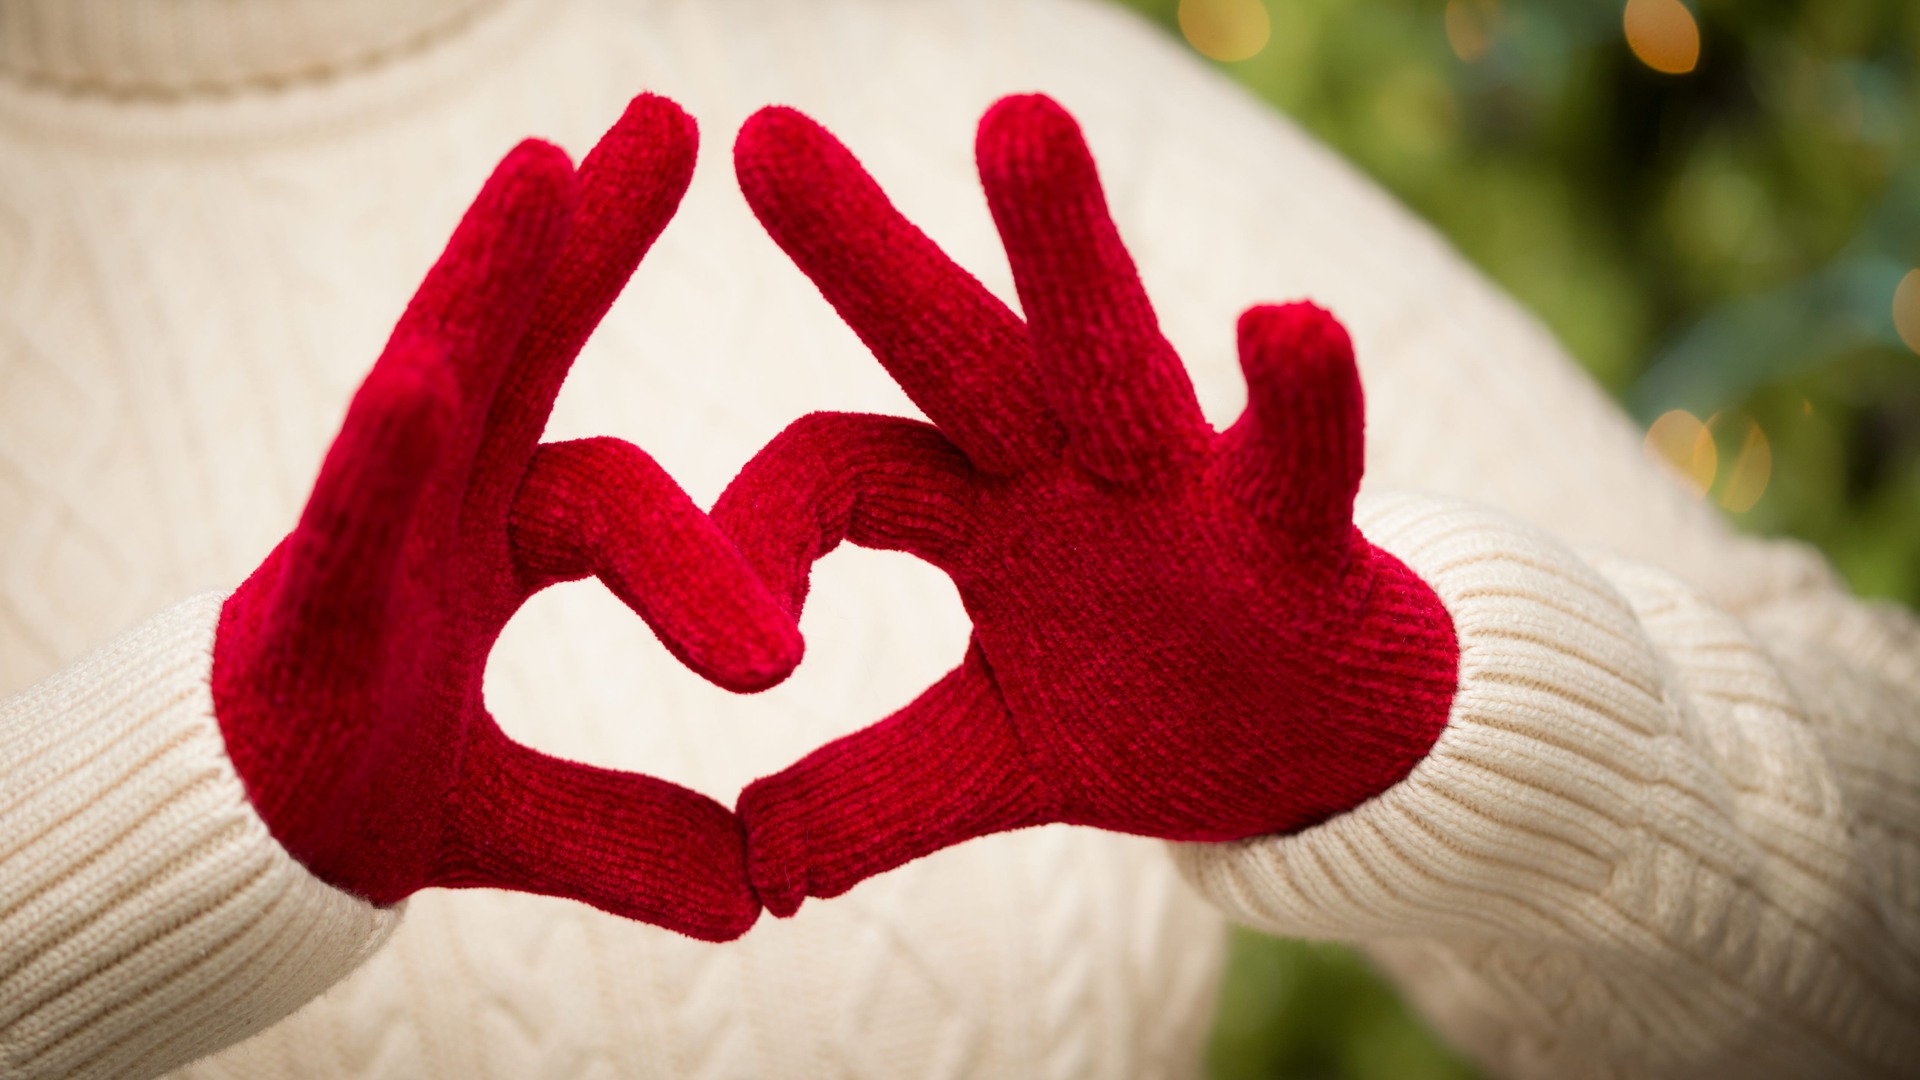 Händer med röda vantar formar ett hjärta.